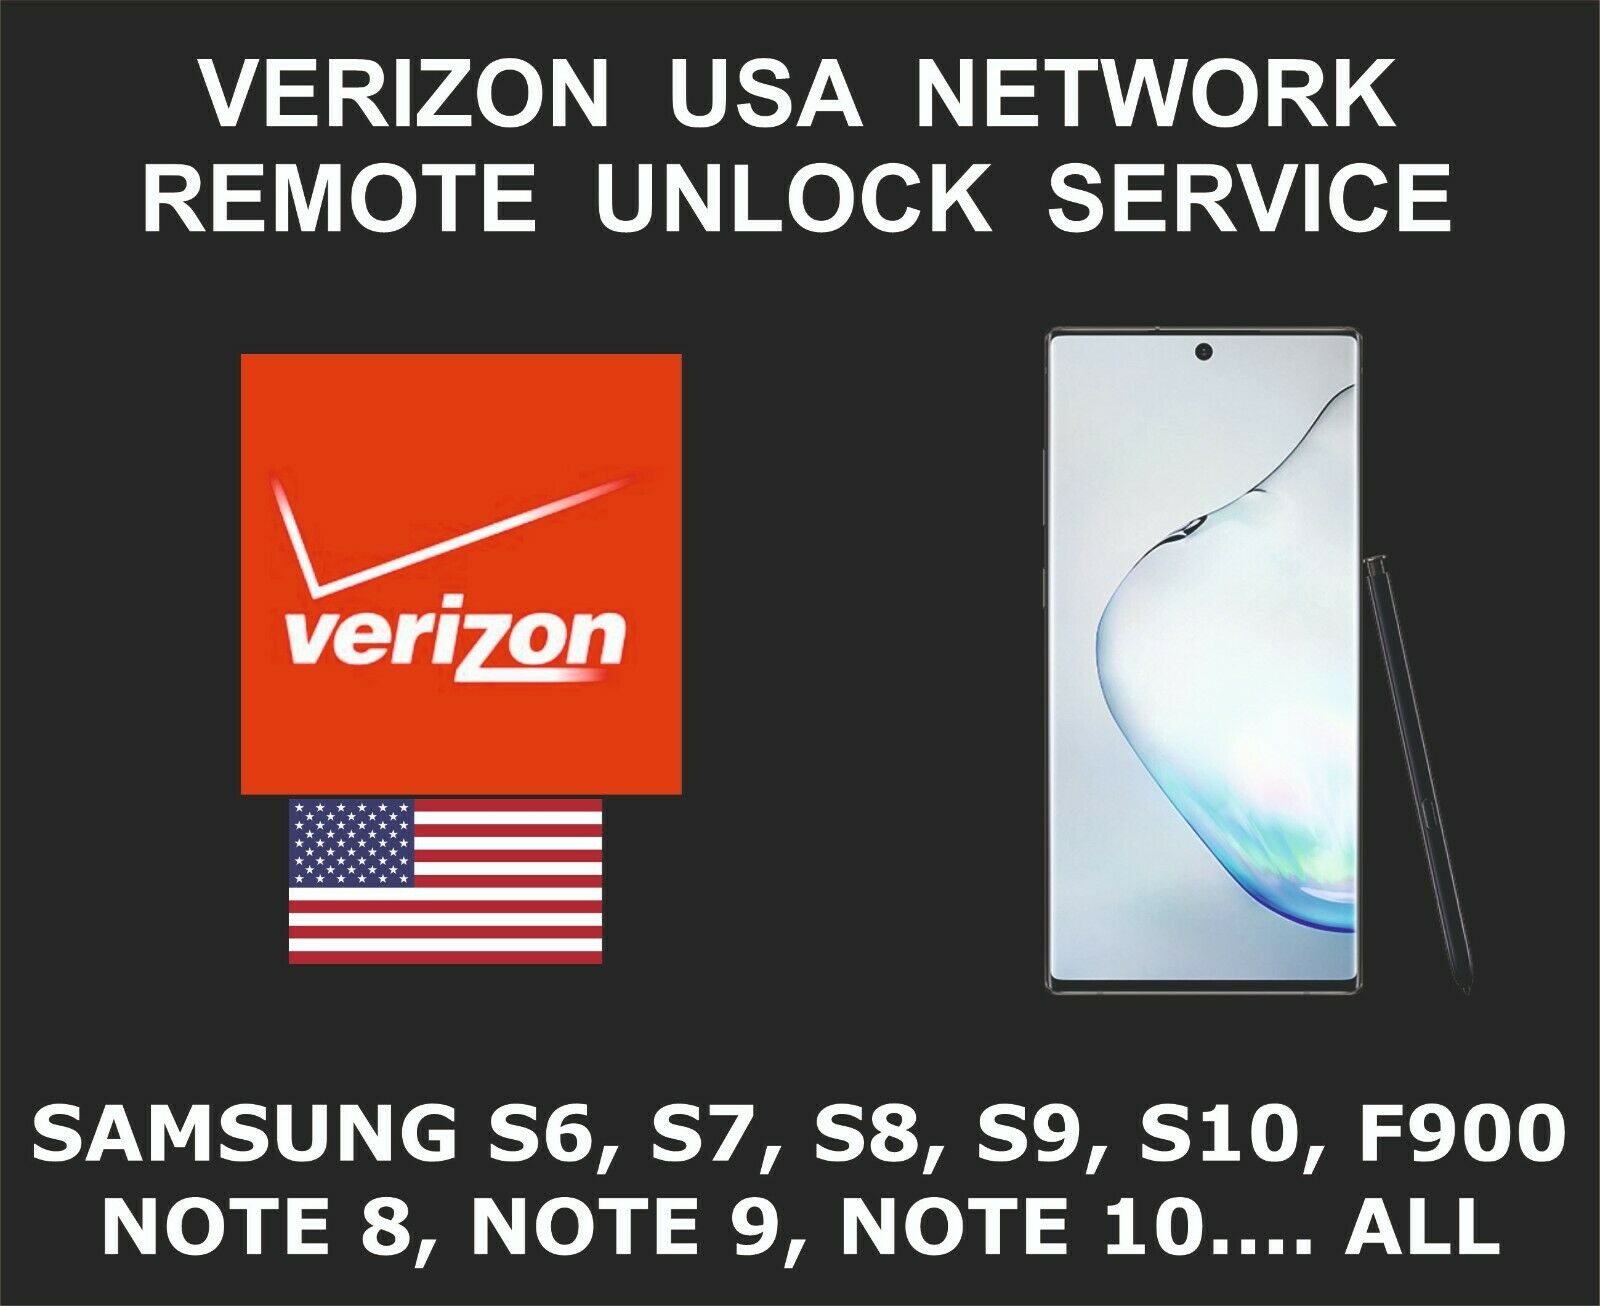 Verizon Usa Samsung Remote Unlock Service, S7, S8 S9, S10, Note 10, Fold, All